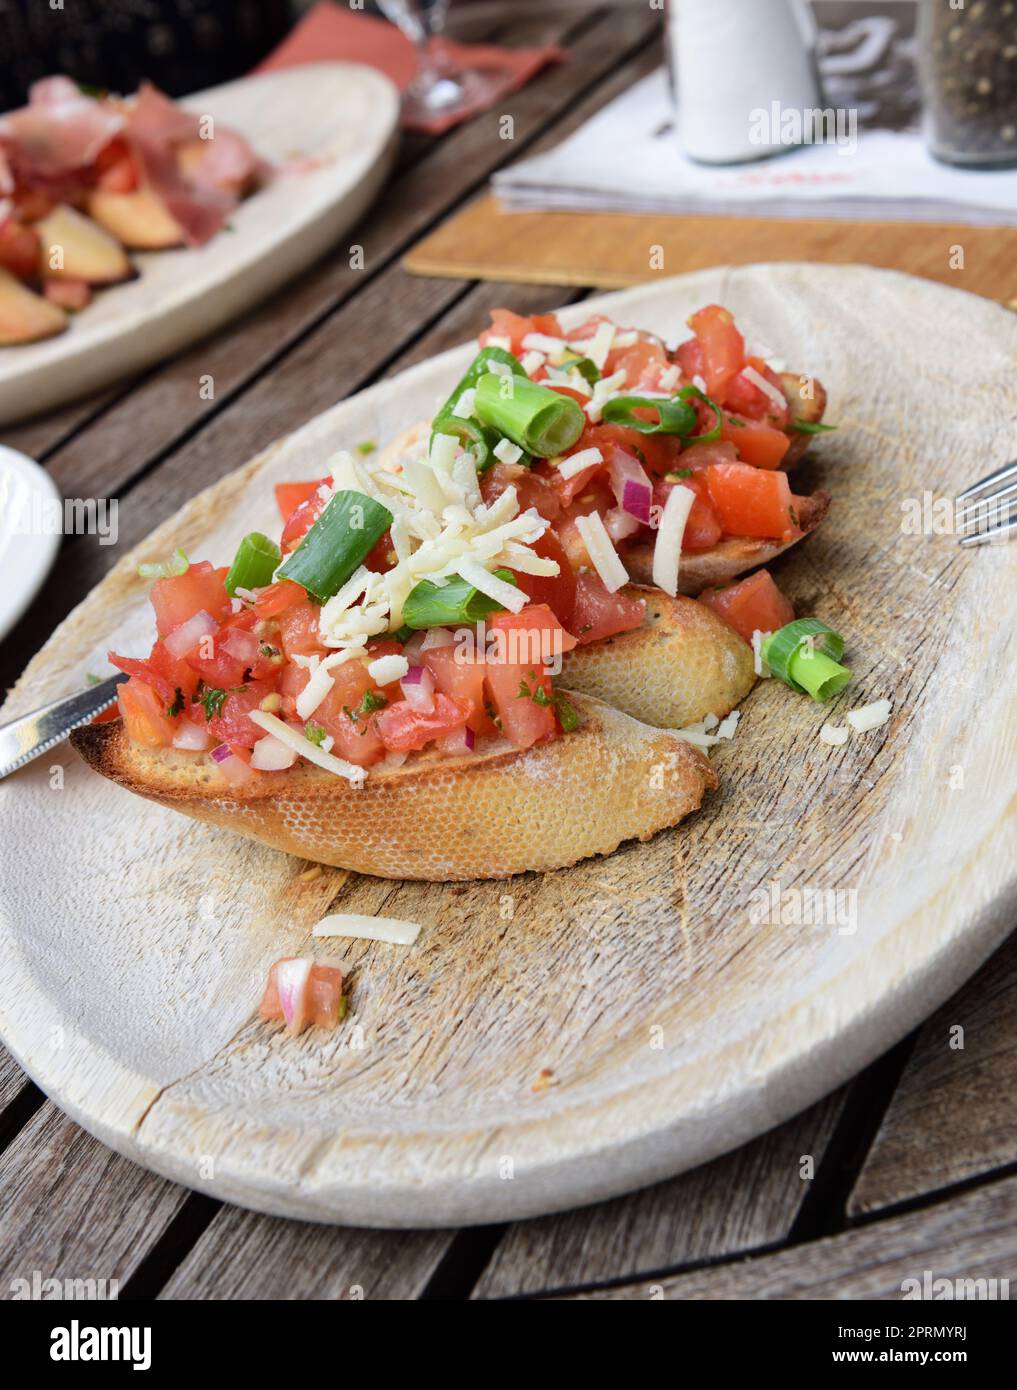 Bruschetta with tomatoes and garlic and ham Stock Photo